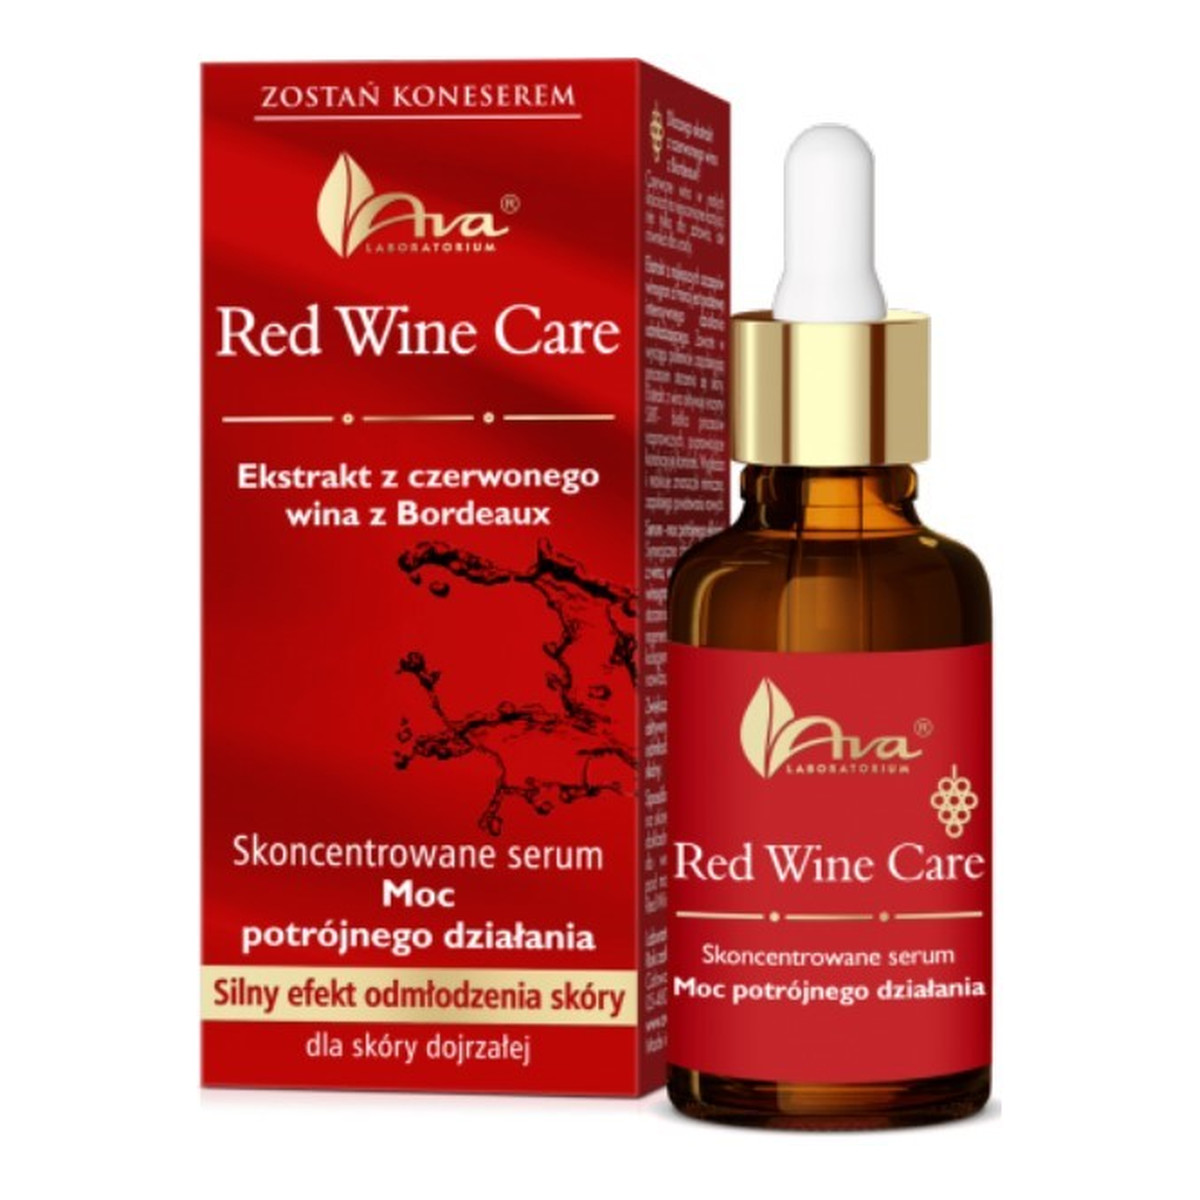 Ava Laboratorium Red Wine serum skoncentrowane do skóry dojrzałej - Moc potrójnego działania 30ml